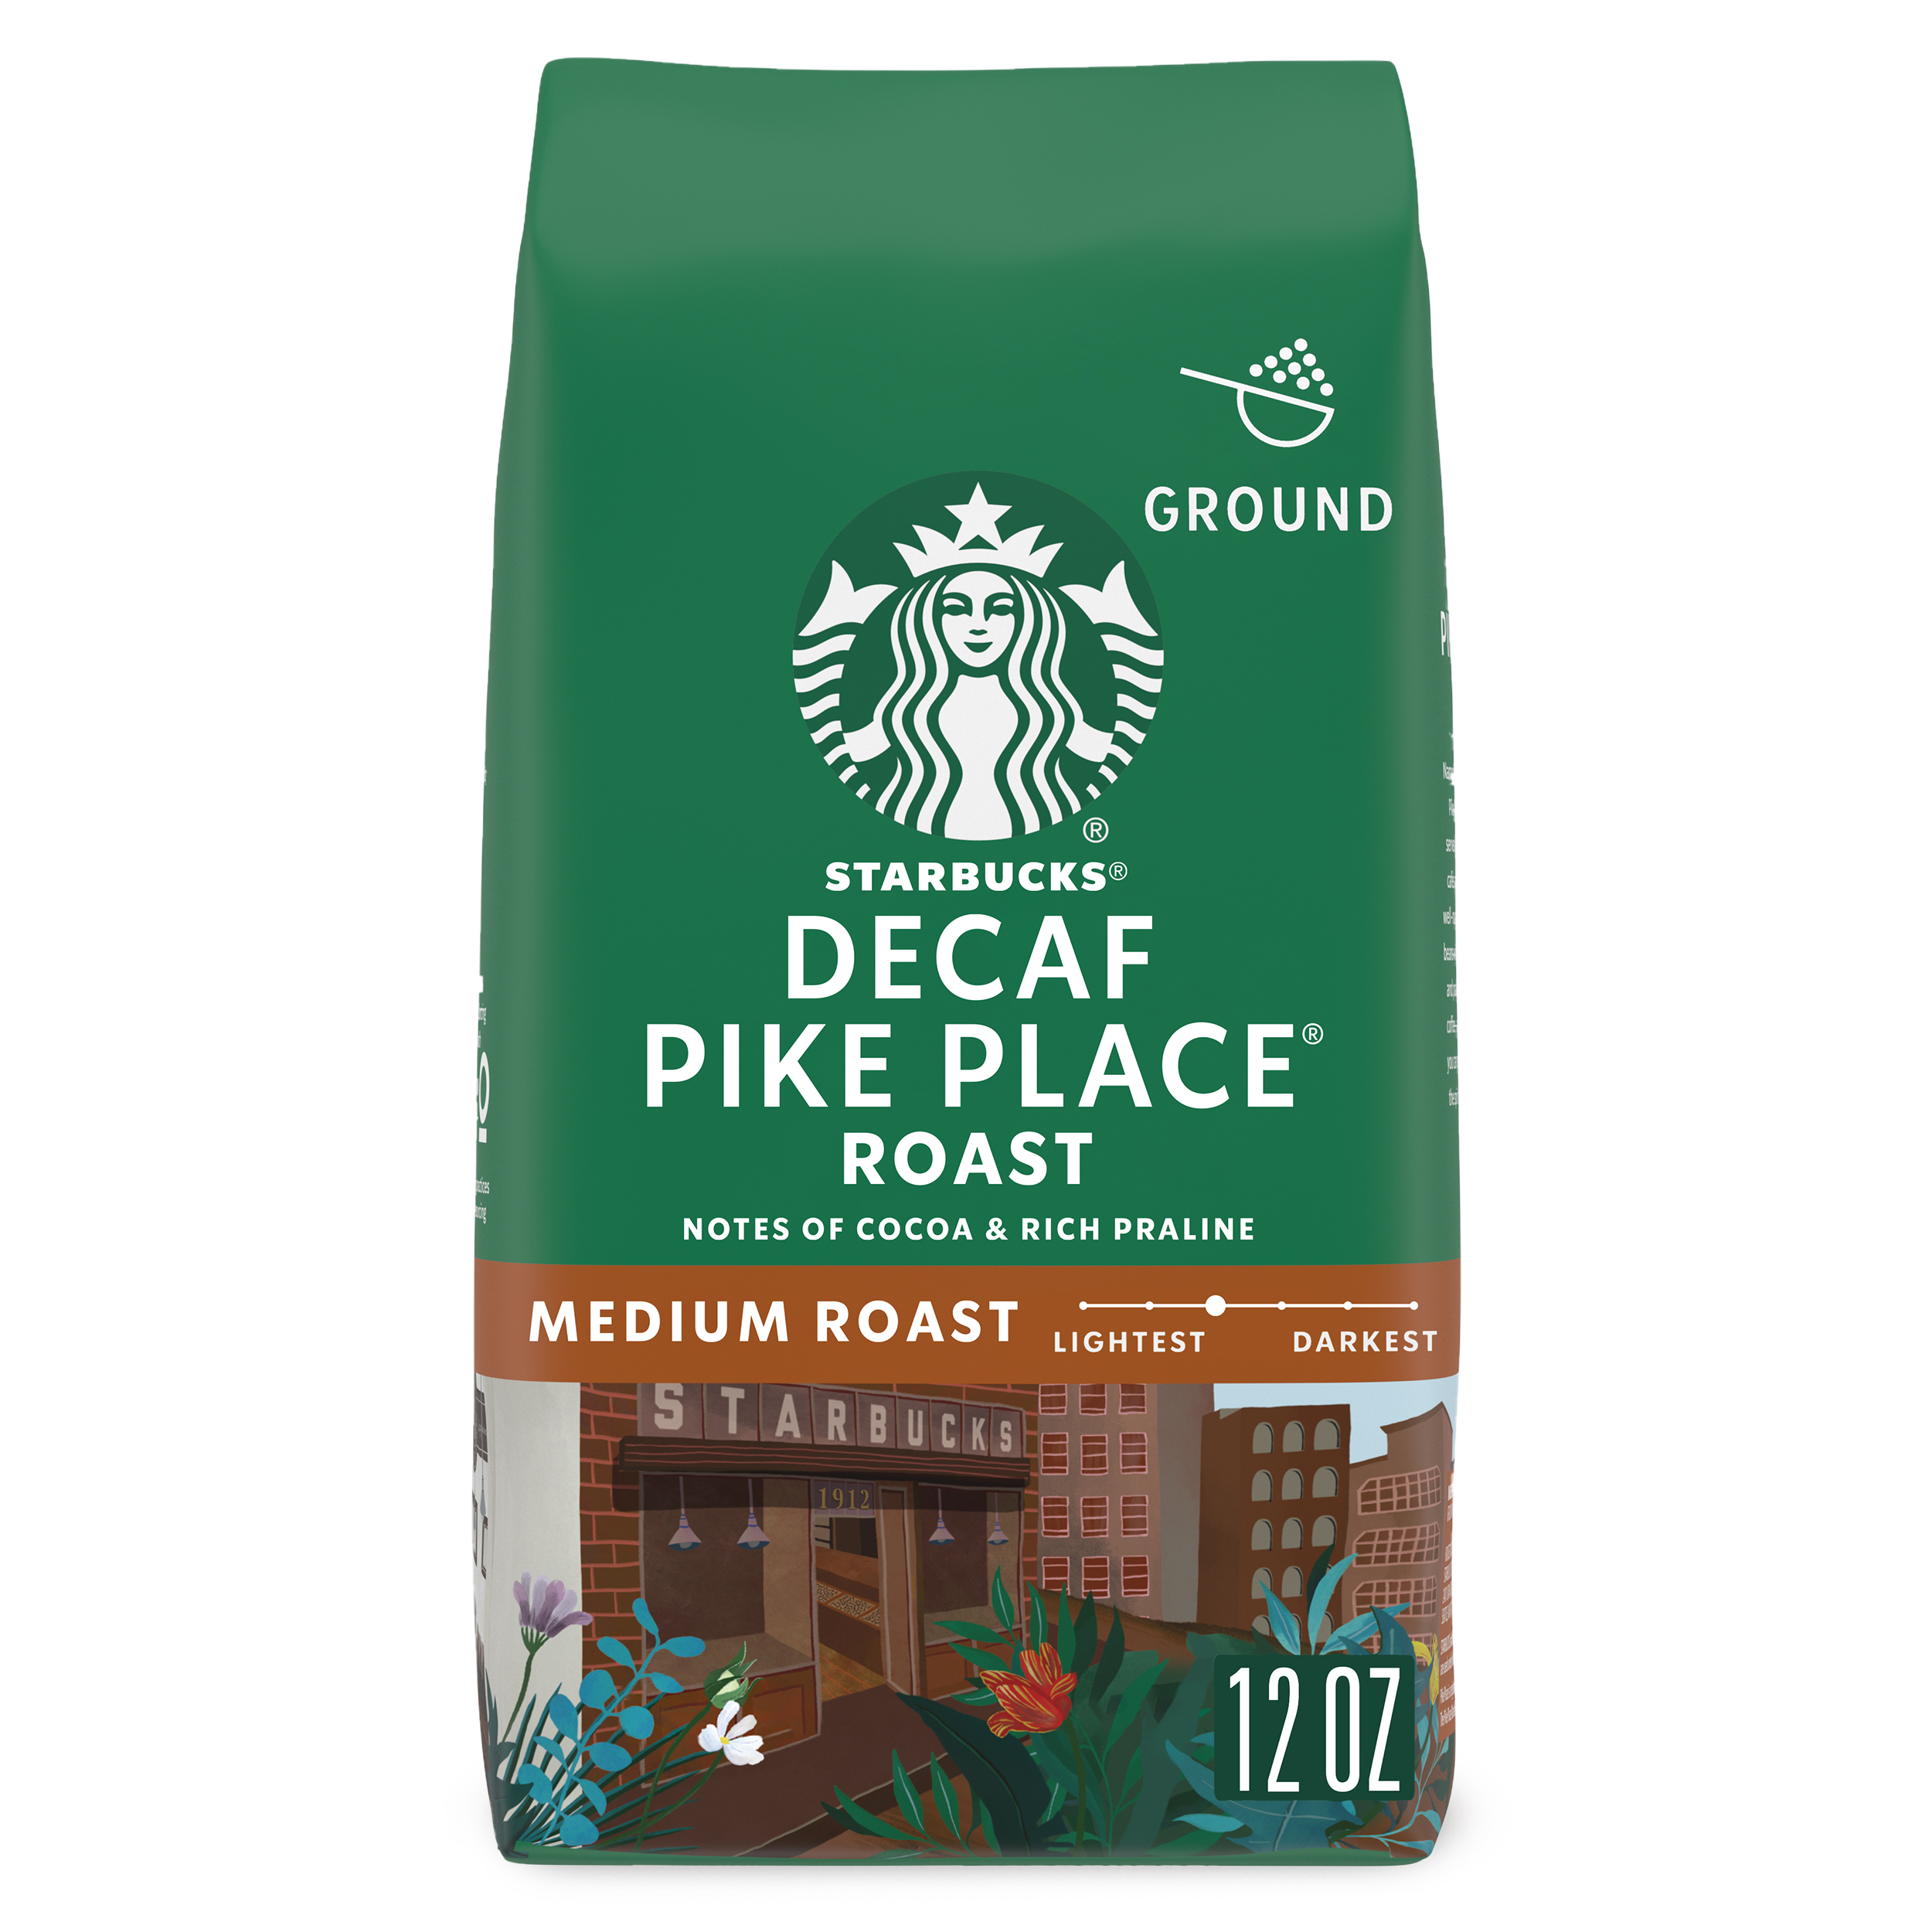 Starbucks Decaf Pike Place Roast Ground Coffee, Medium Roast, 12 oz - image 1 of 8